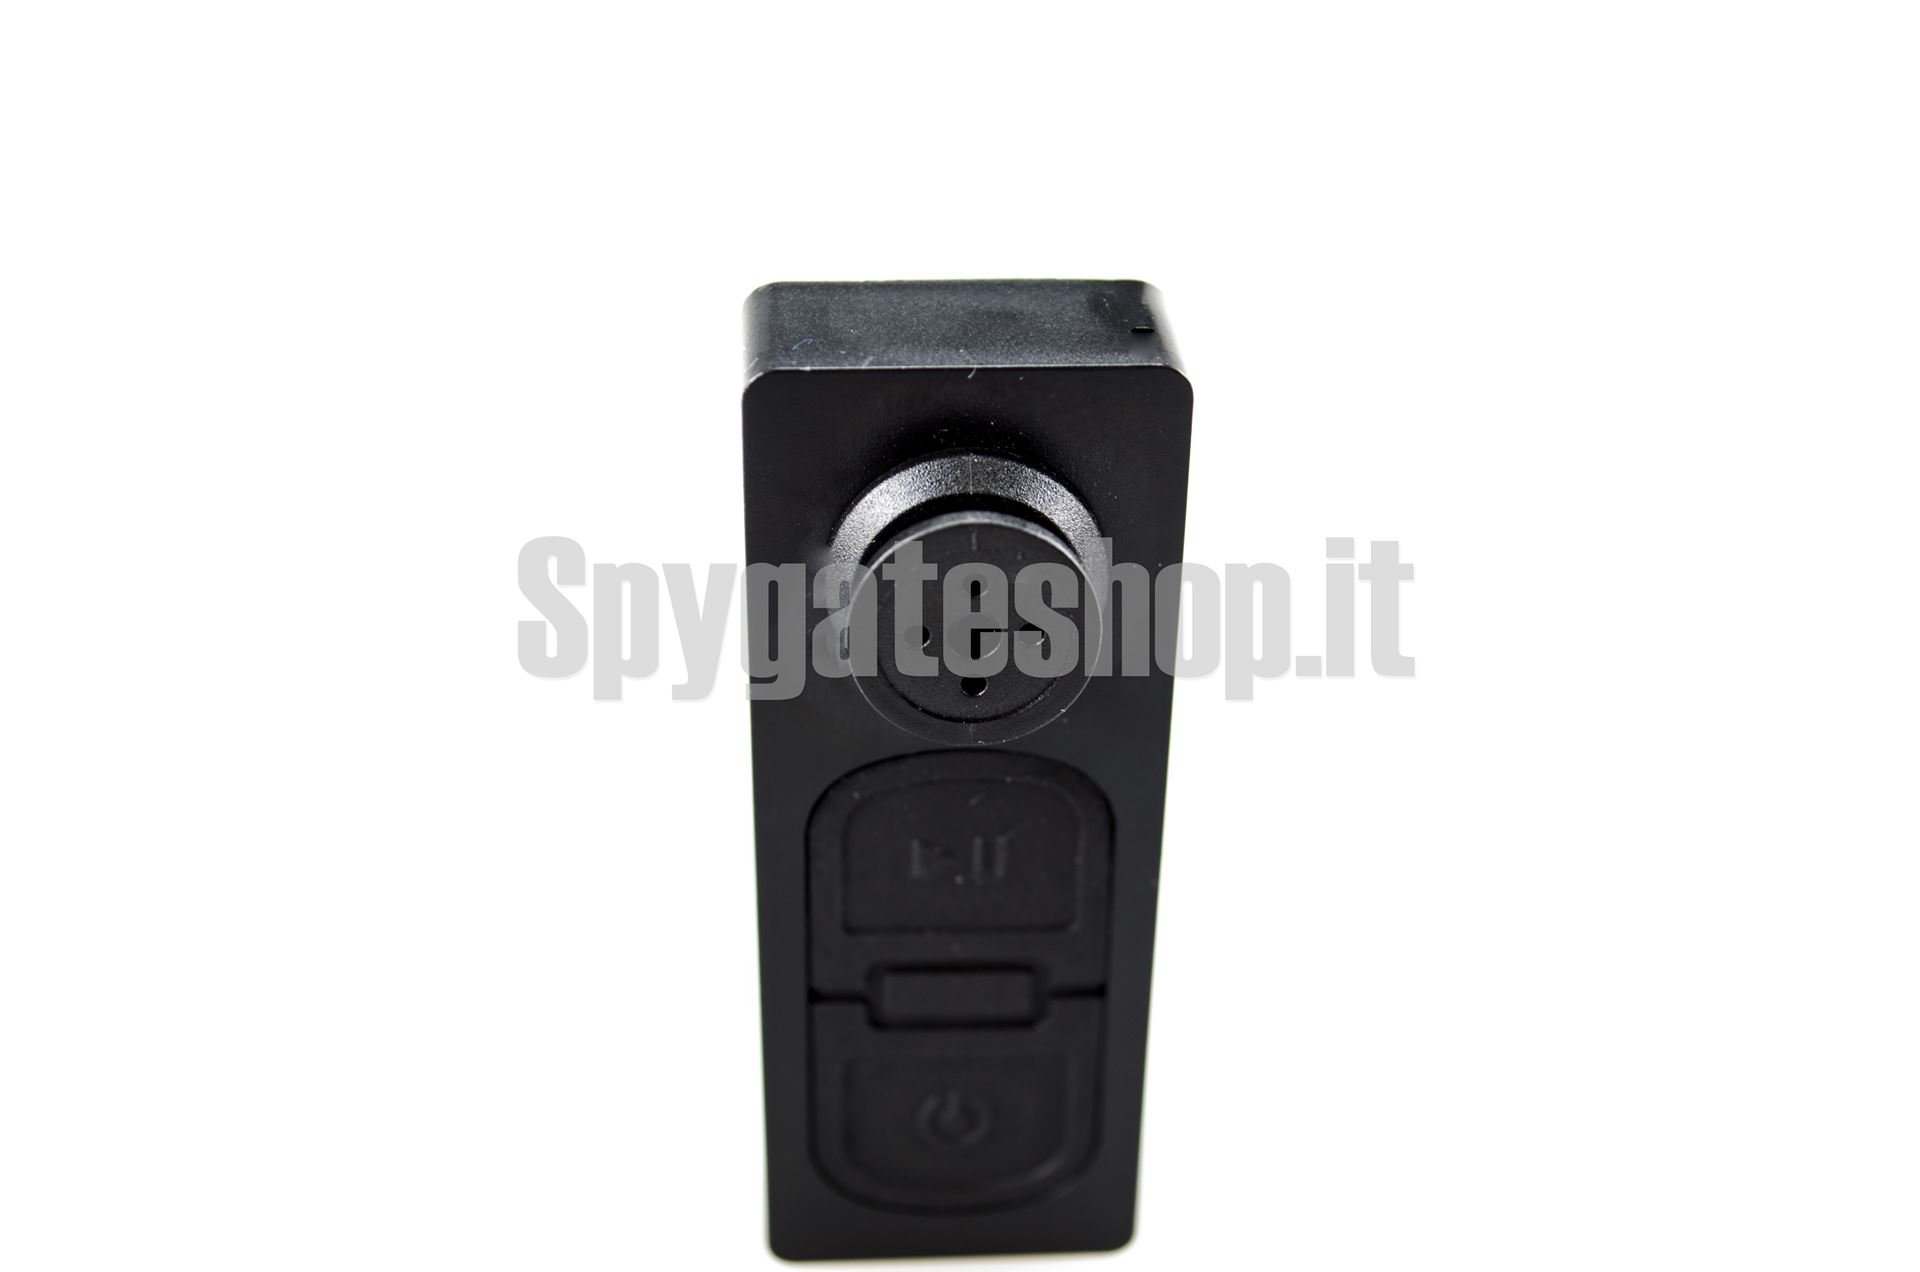 SpyGate - Spy Shop Brescia.. Microcamera collana spia